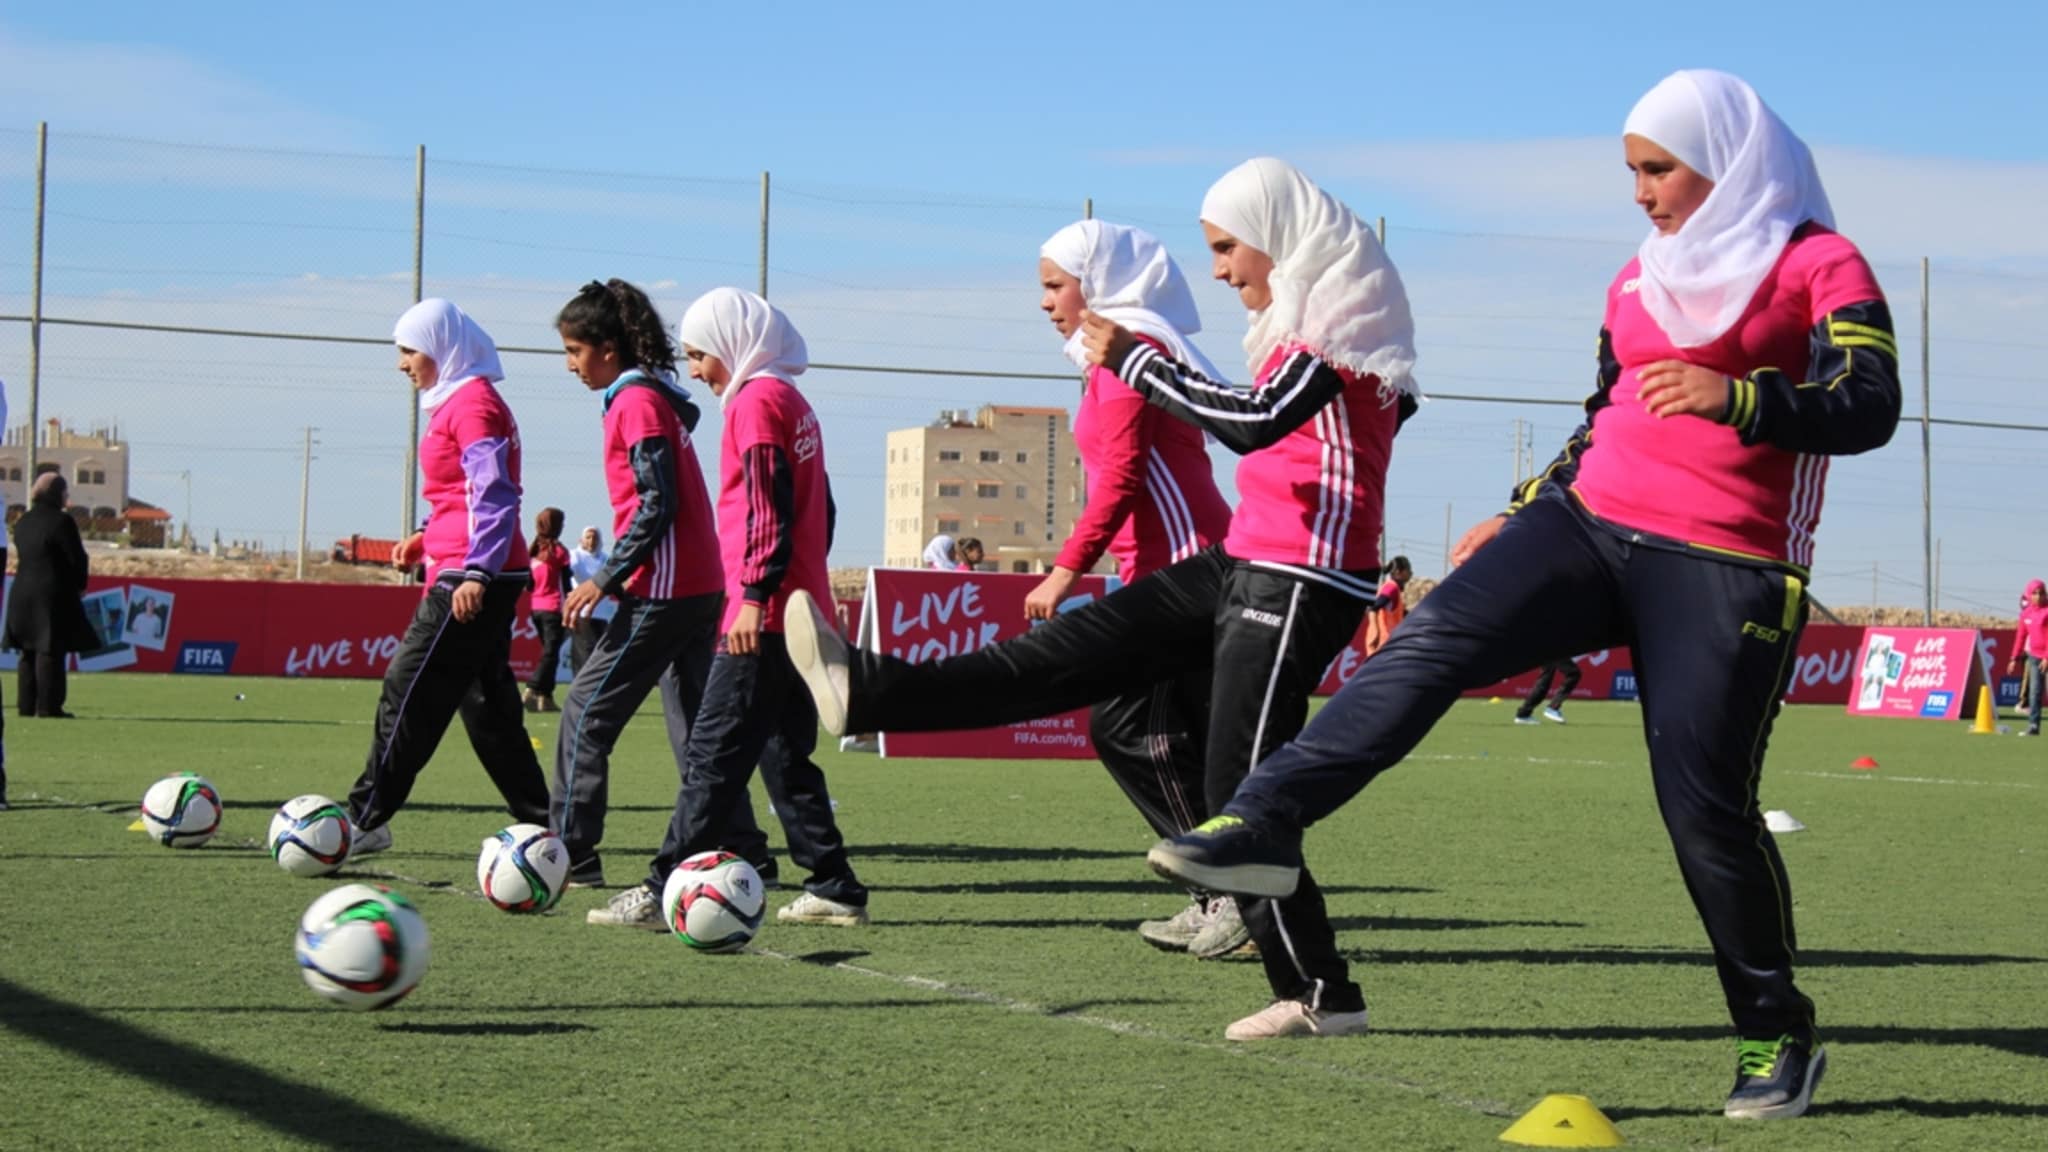 Live Your Goal S Festival In Karak Jordan - School Sport Festivals In Amman - HD Wallpaper 